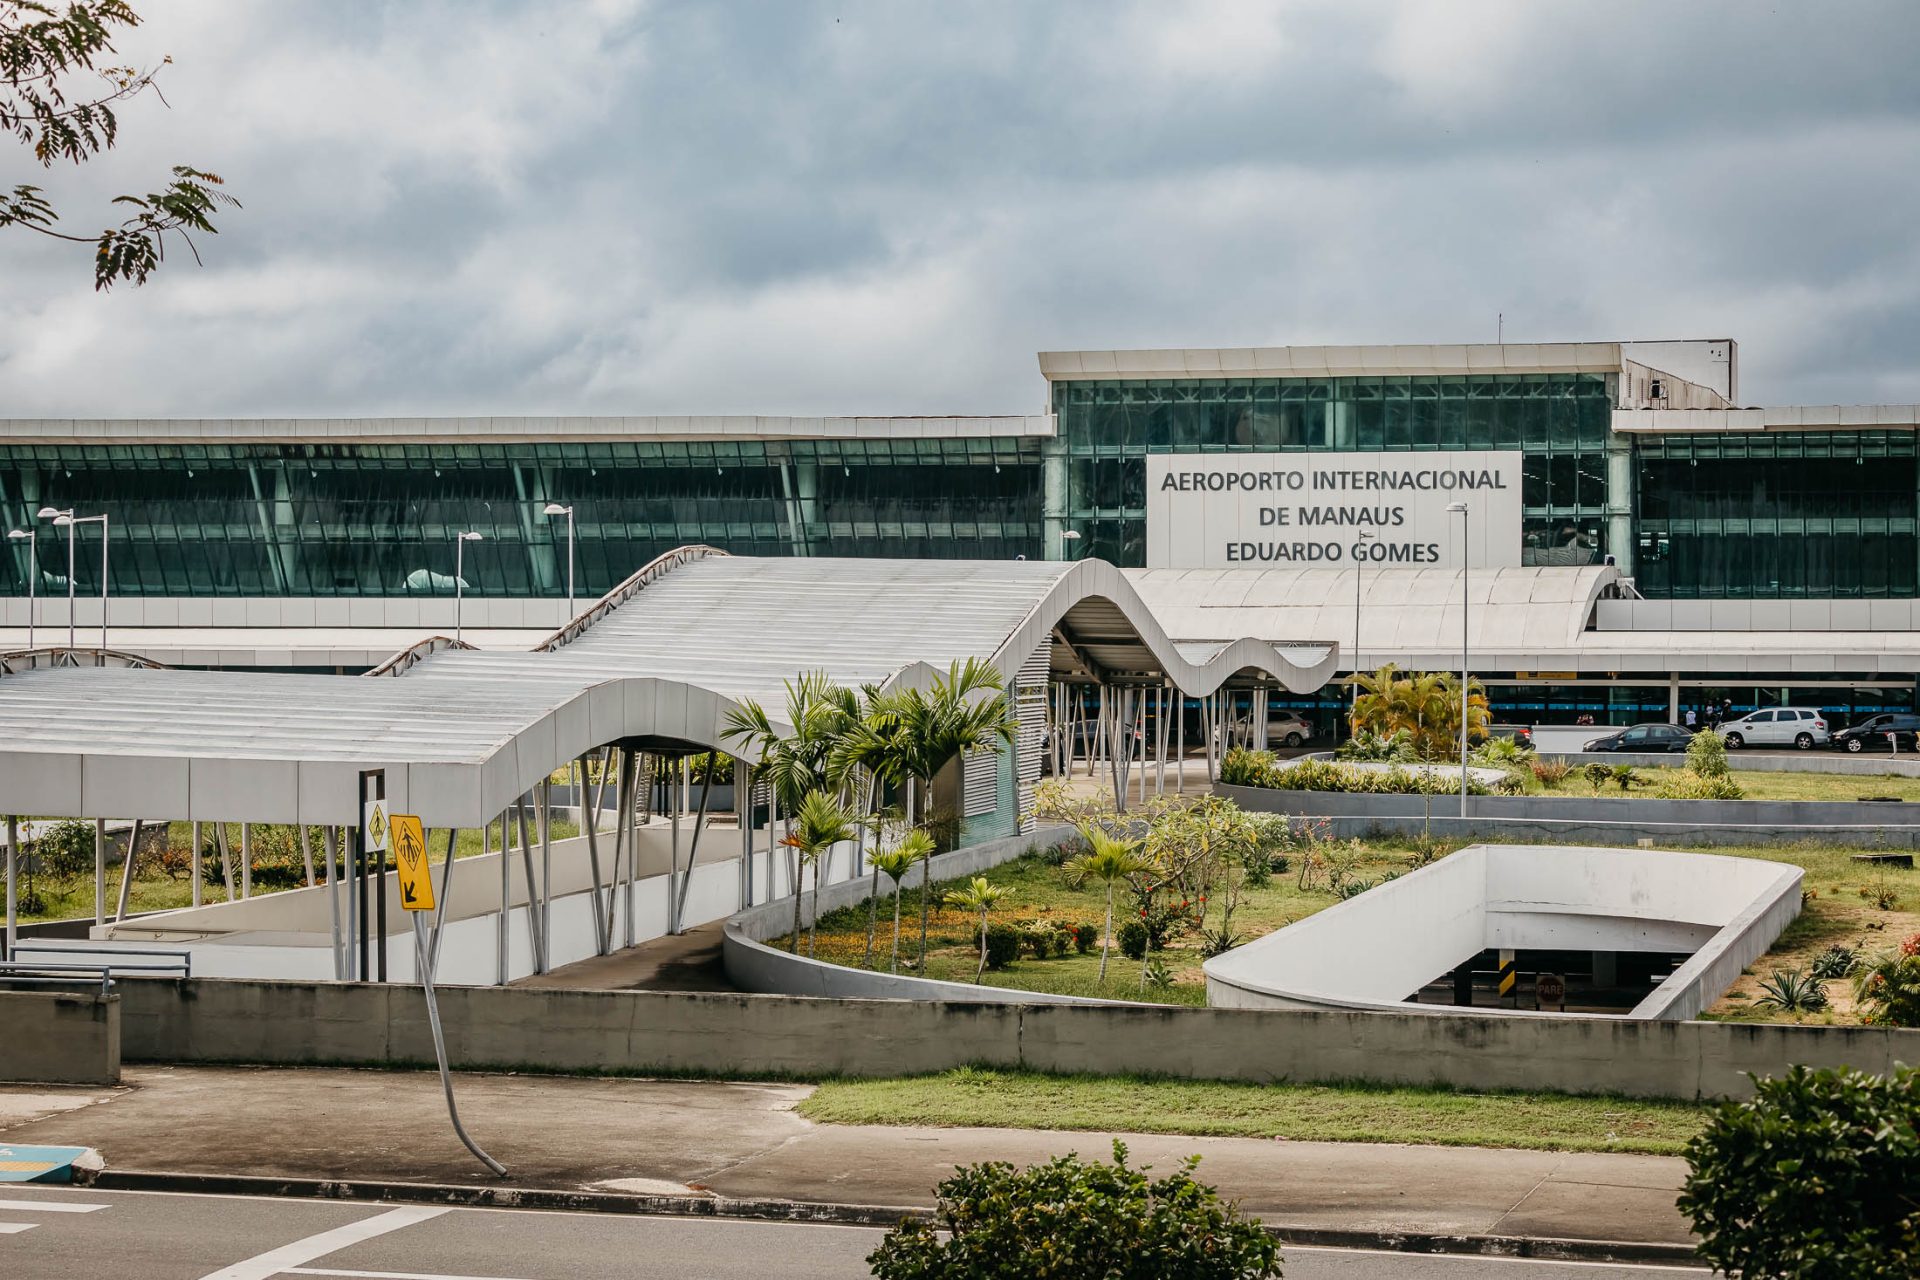 Descoberta das drogas ocorreu durante fiscalização no raio x do aeroporto de Manaus - Foto: Divulgação